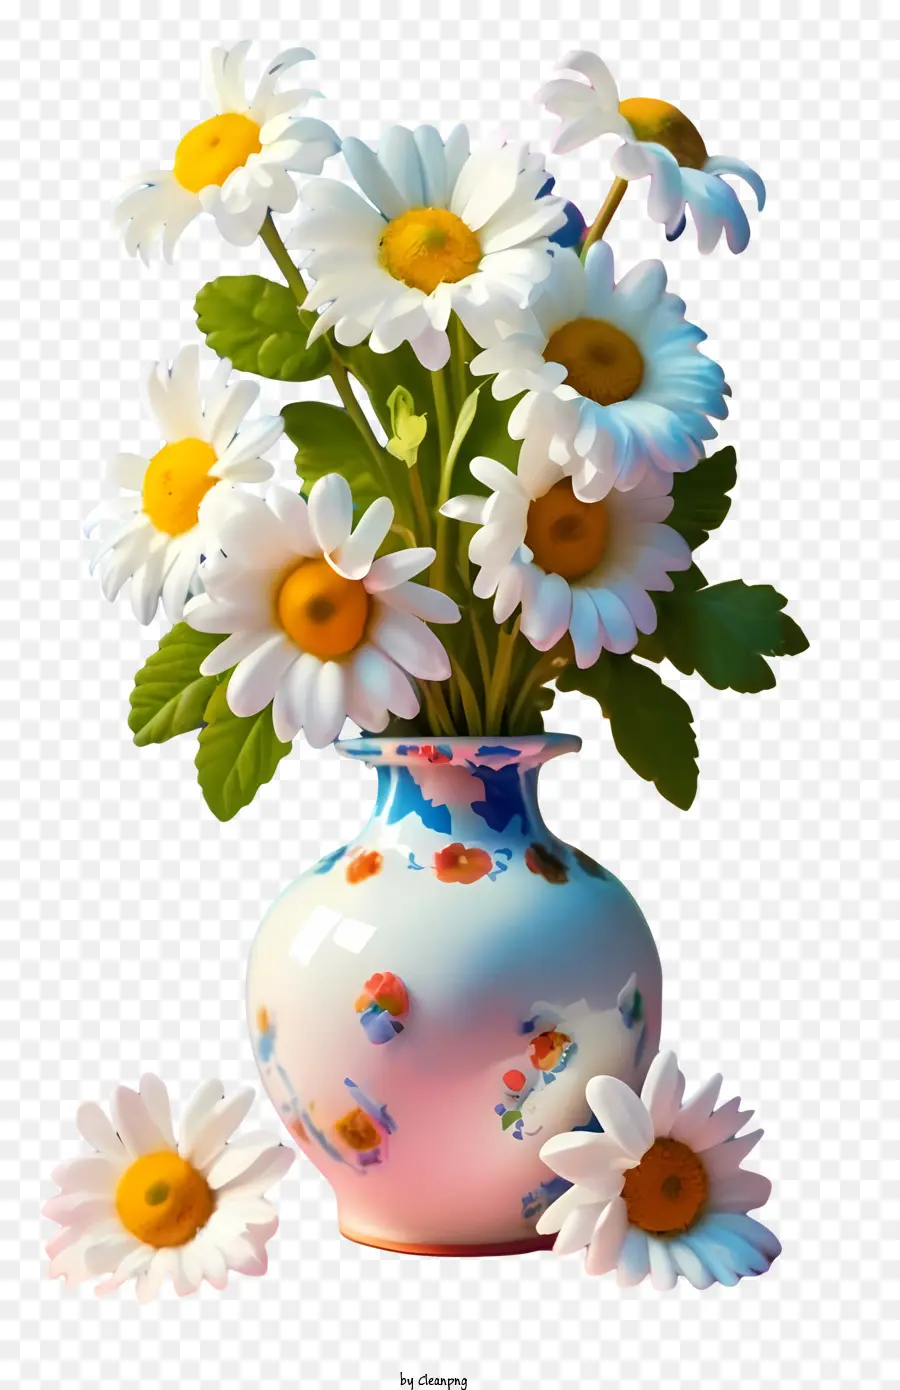 disegno floreale - Vaso di margherite bianche circondate da fiori bianchi